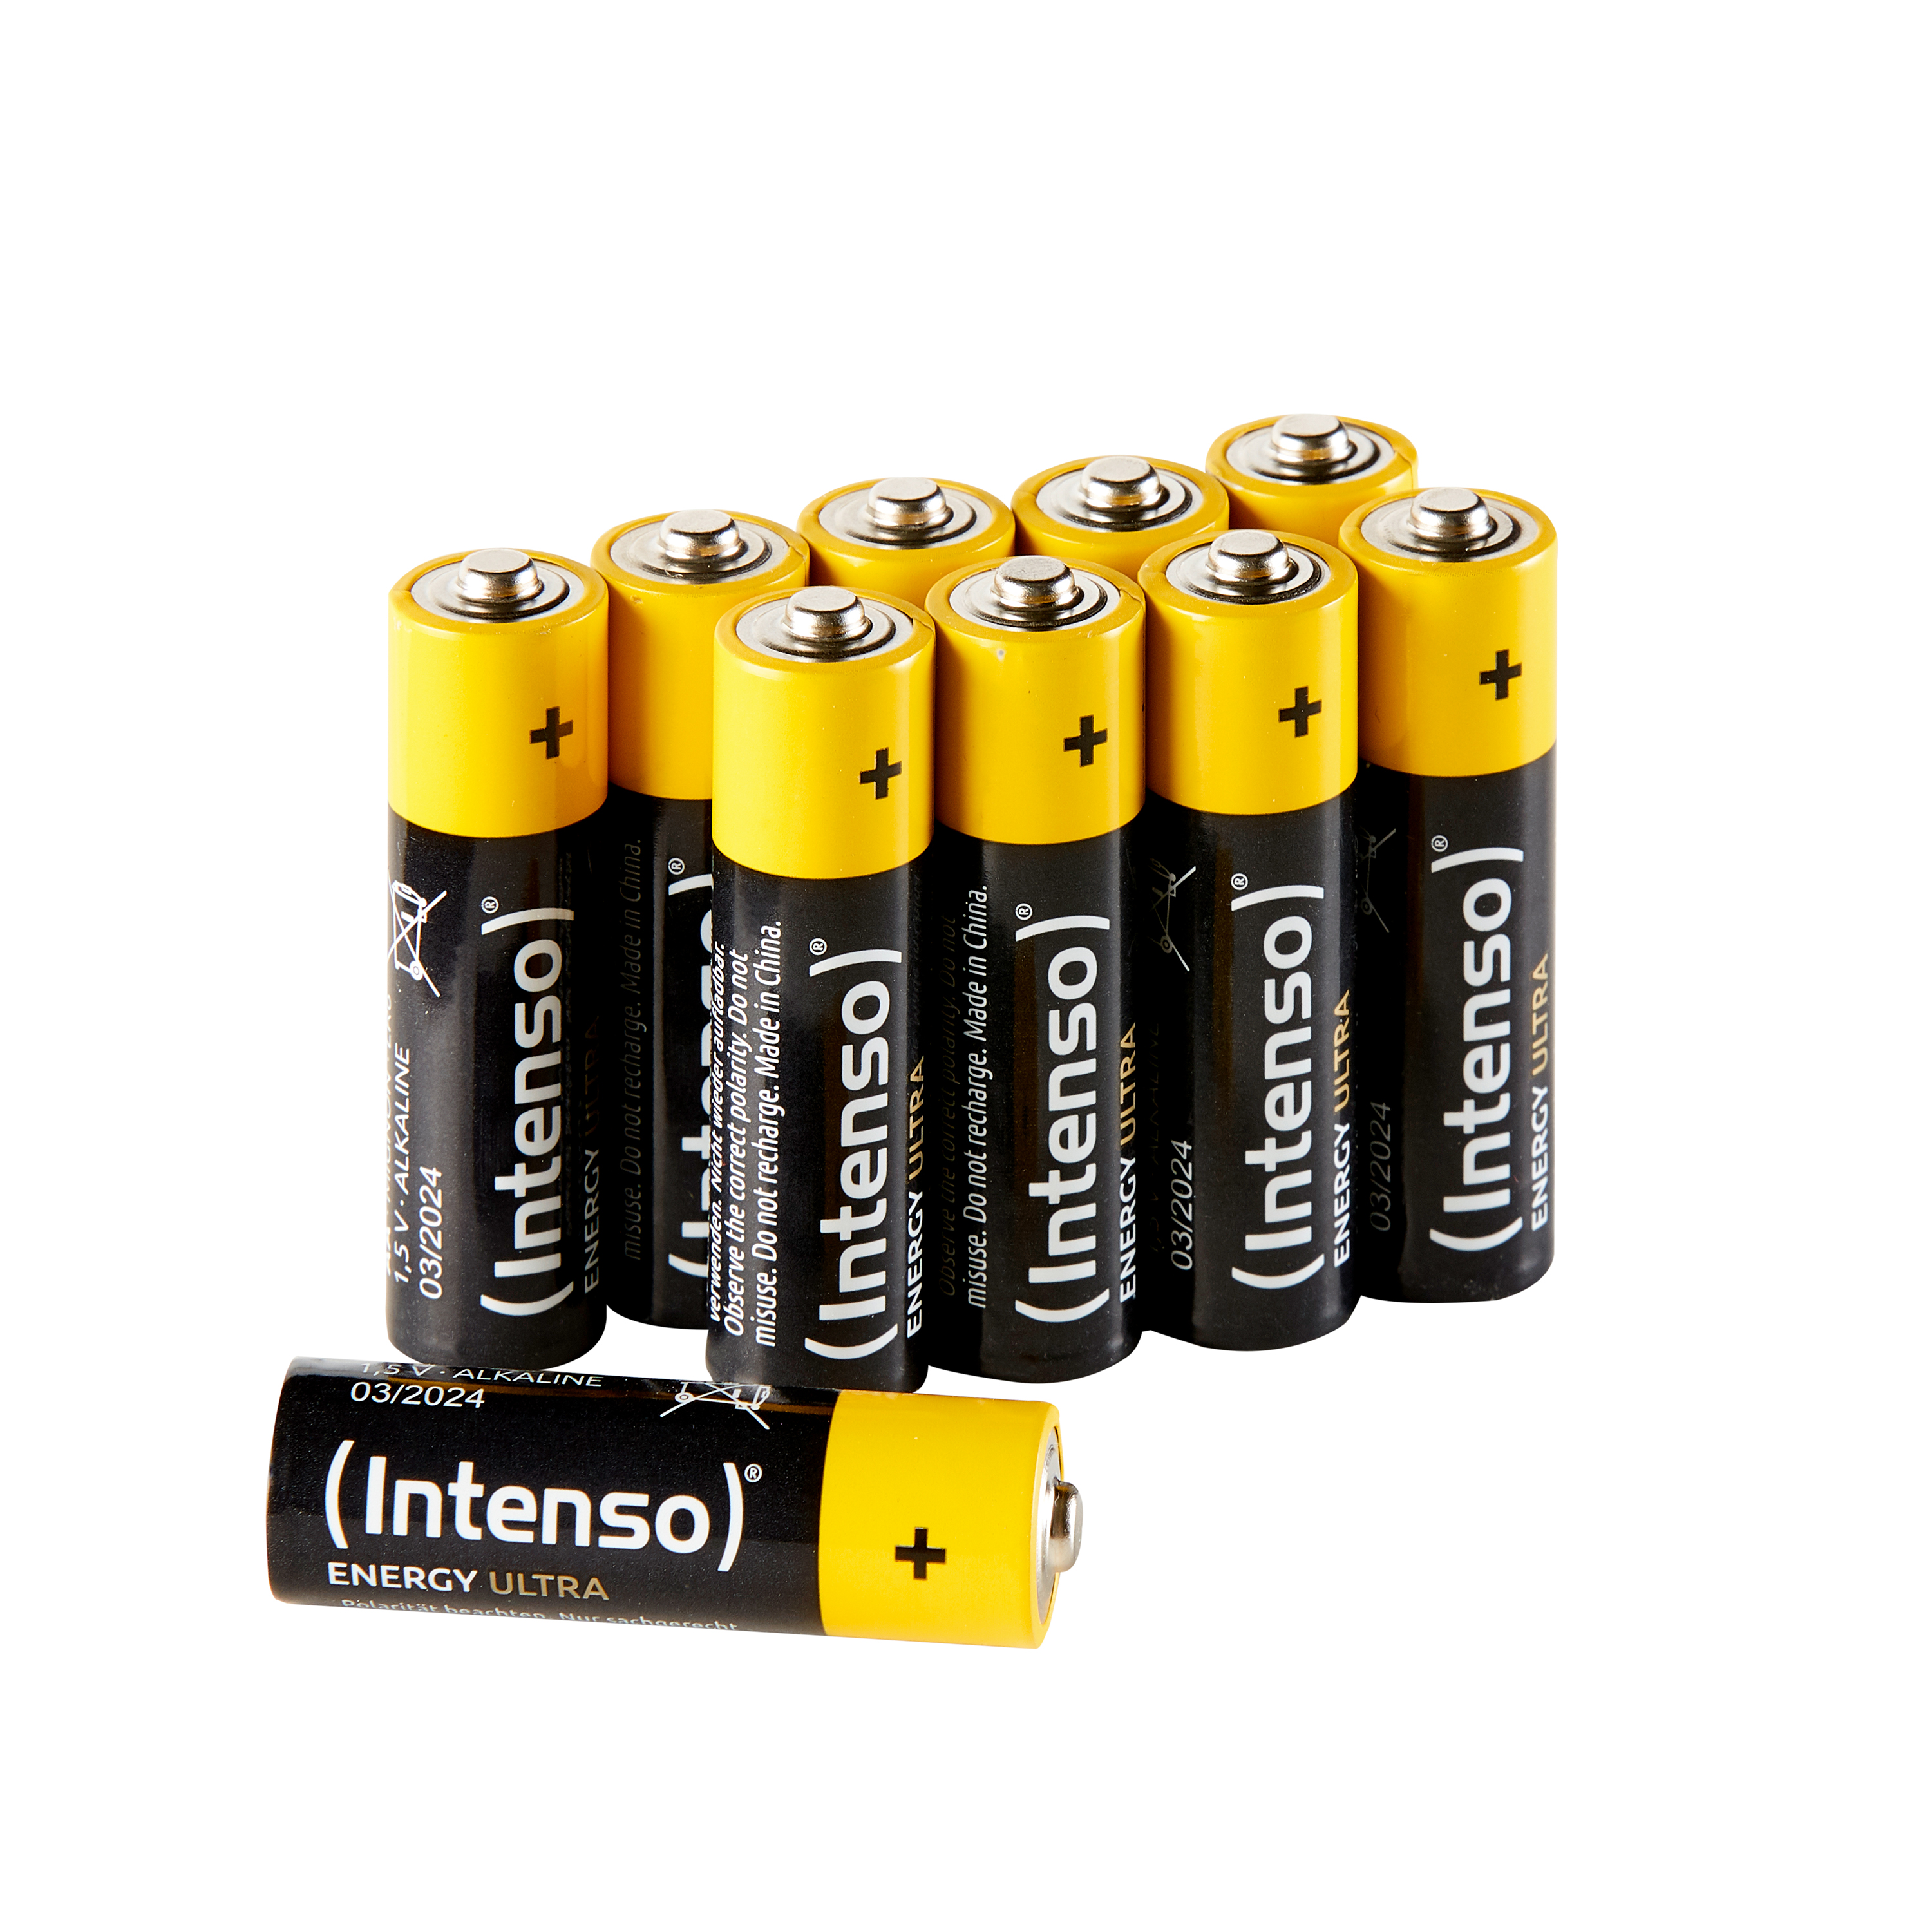 INTENSO Ultra Energy Pack Batterie 10er AA LR6